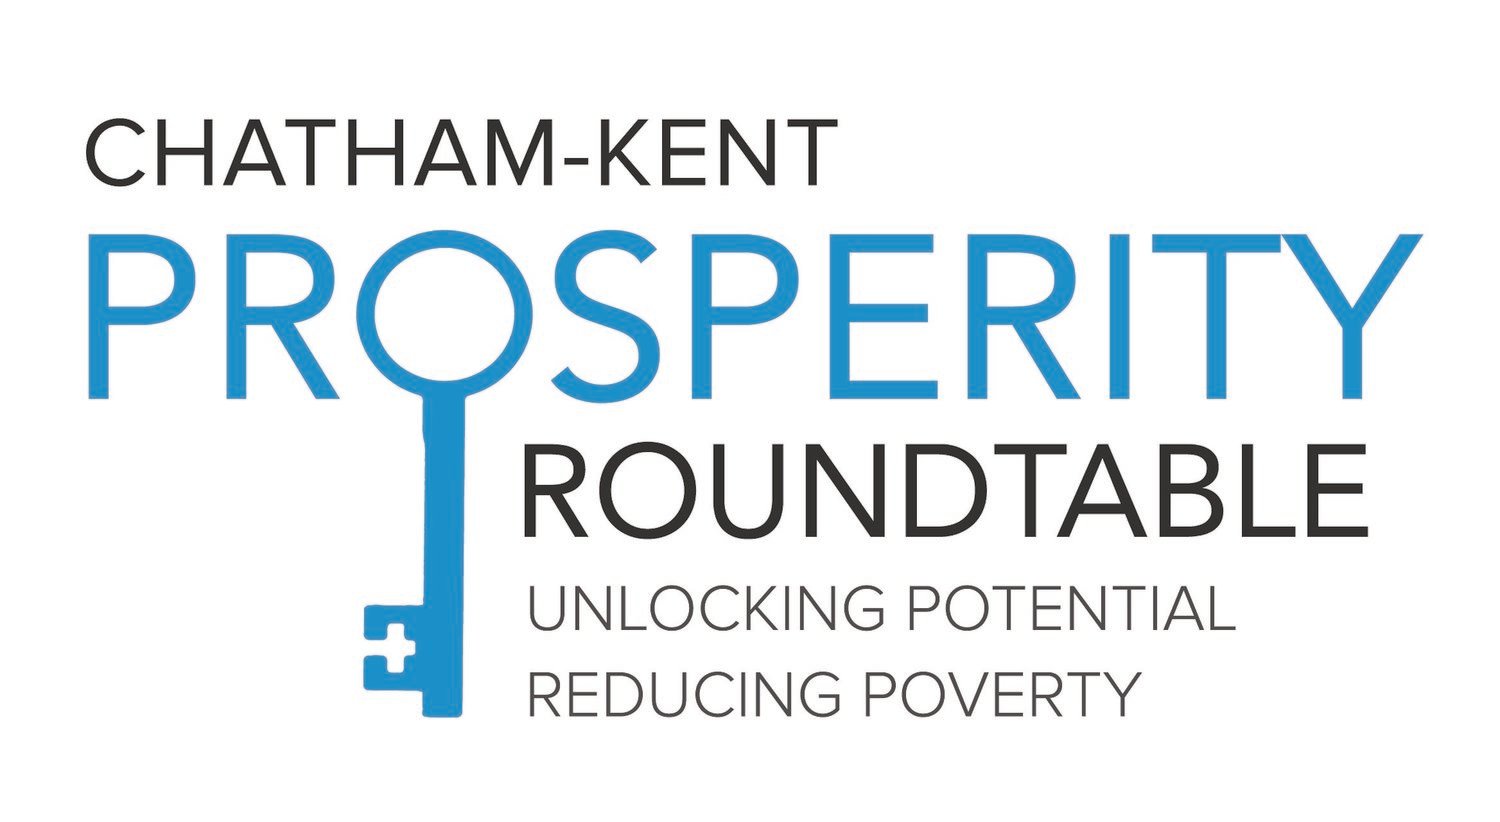 Chatham-Kent Logo - Chatham-Kent Prosperity Roundtable